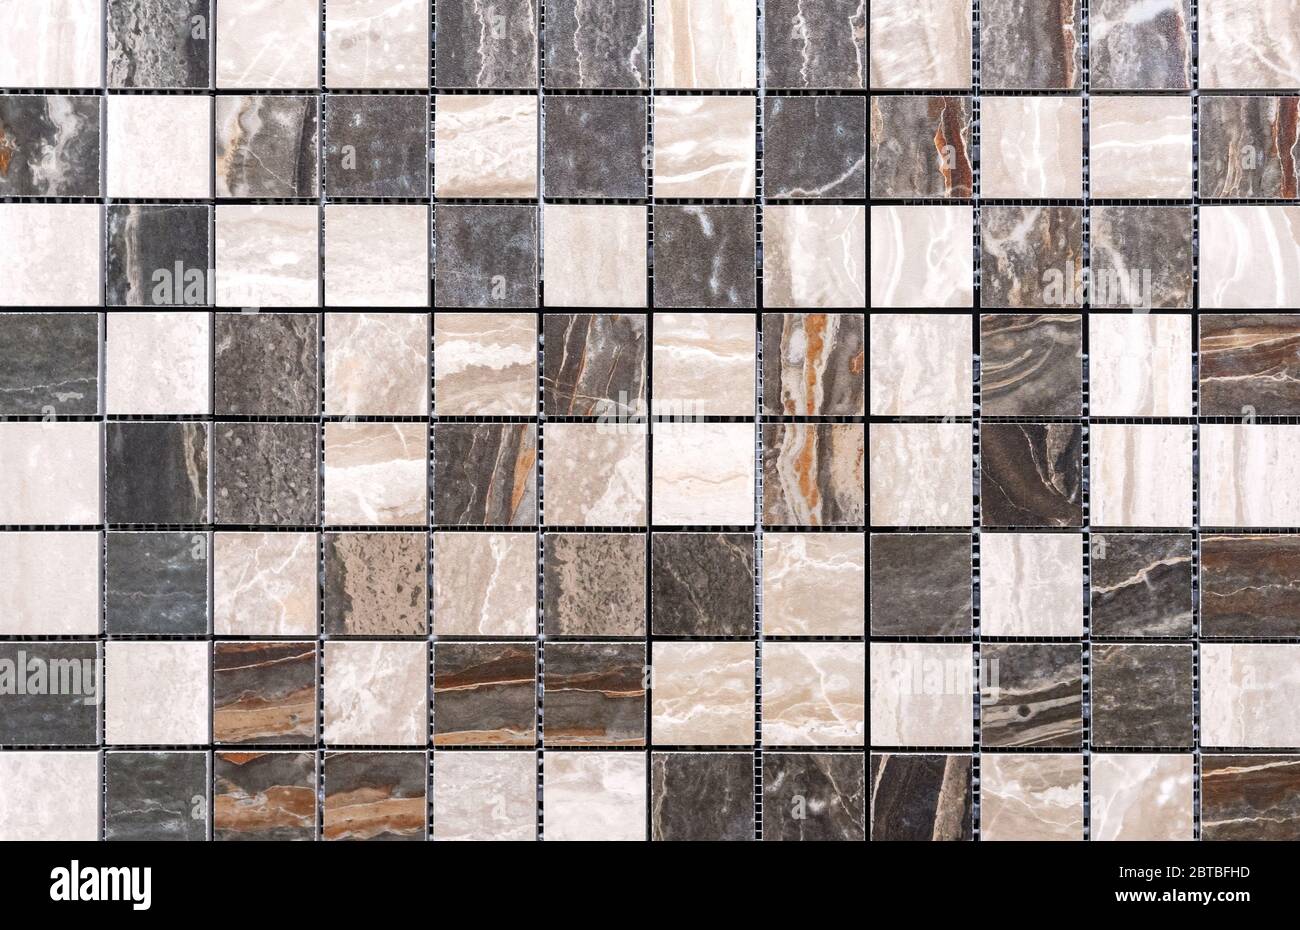 Keramik-Mosaikfliesen mit grauen und beigen Quadraten aus Naturquarz zur  Dekoration der Küche, des Badezimmers oder des Pools Stockfotografie - Alamy